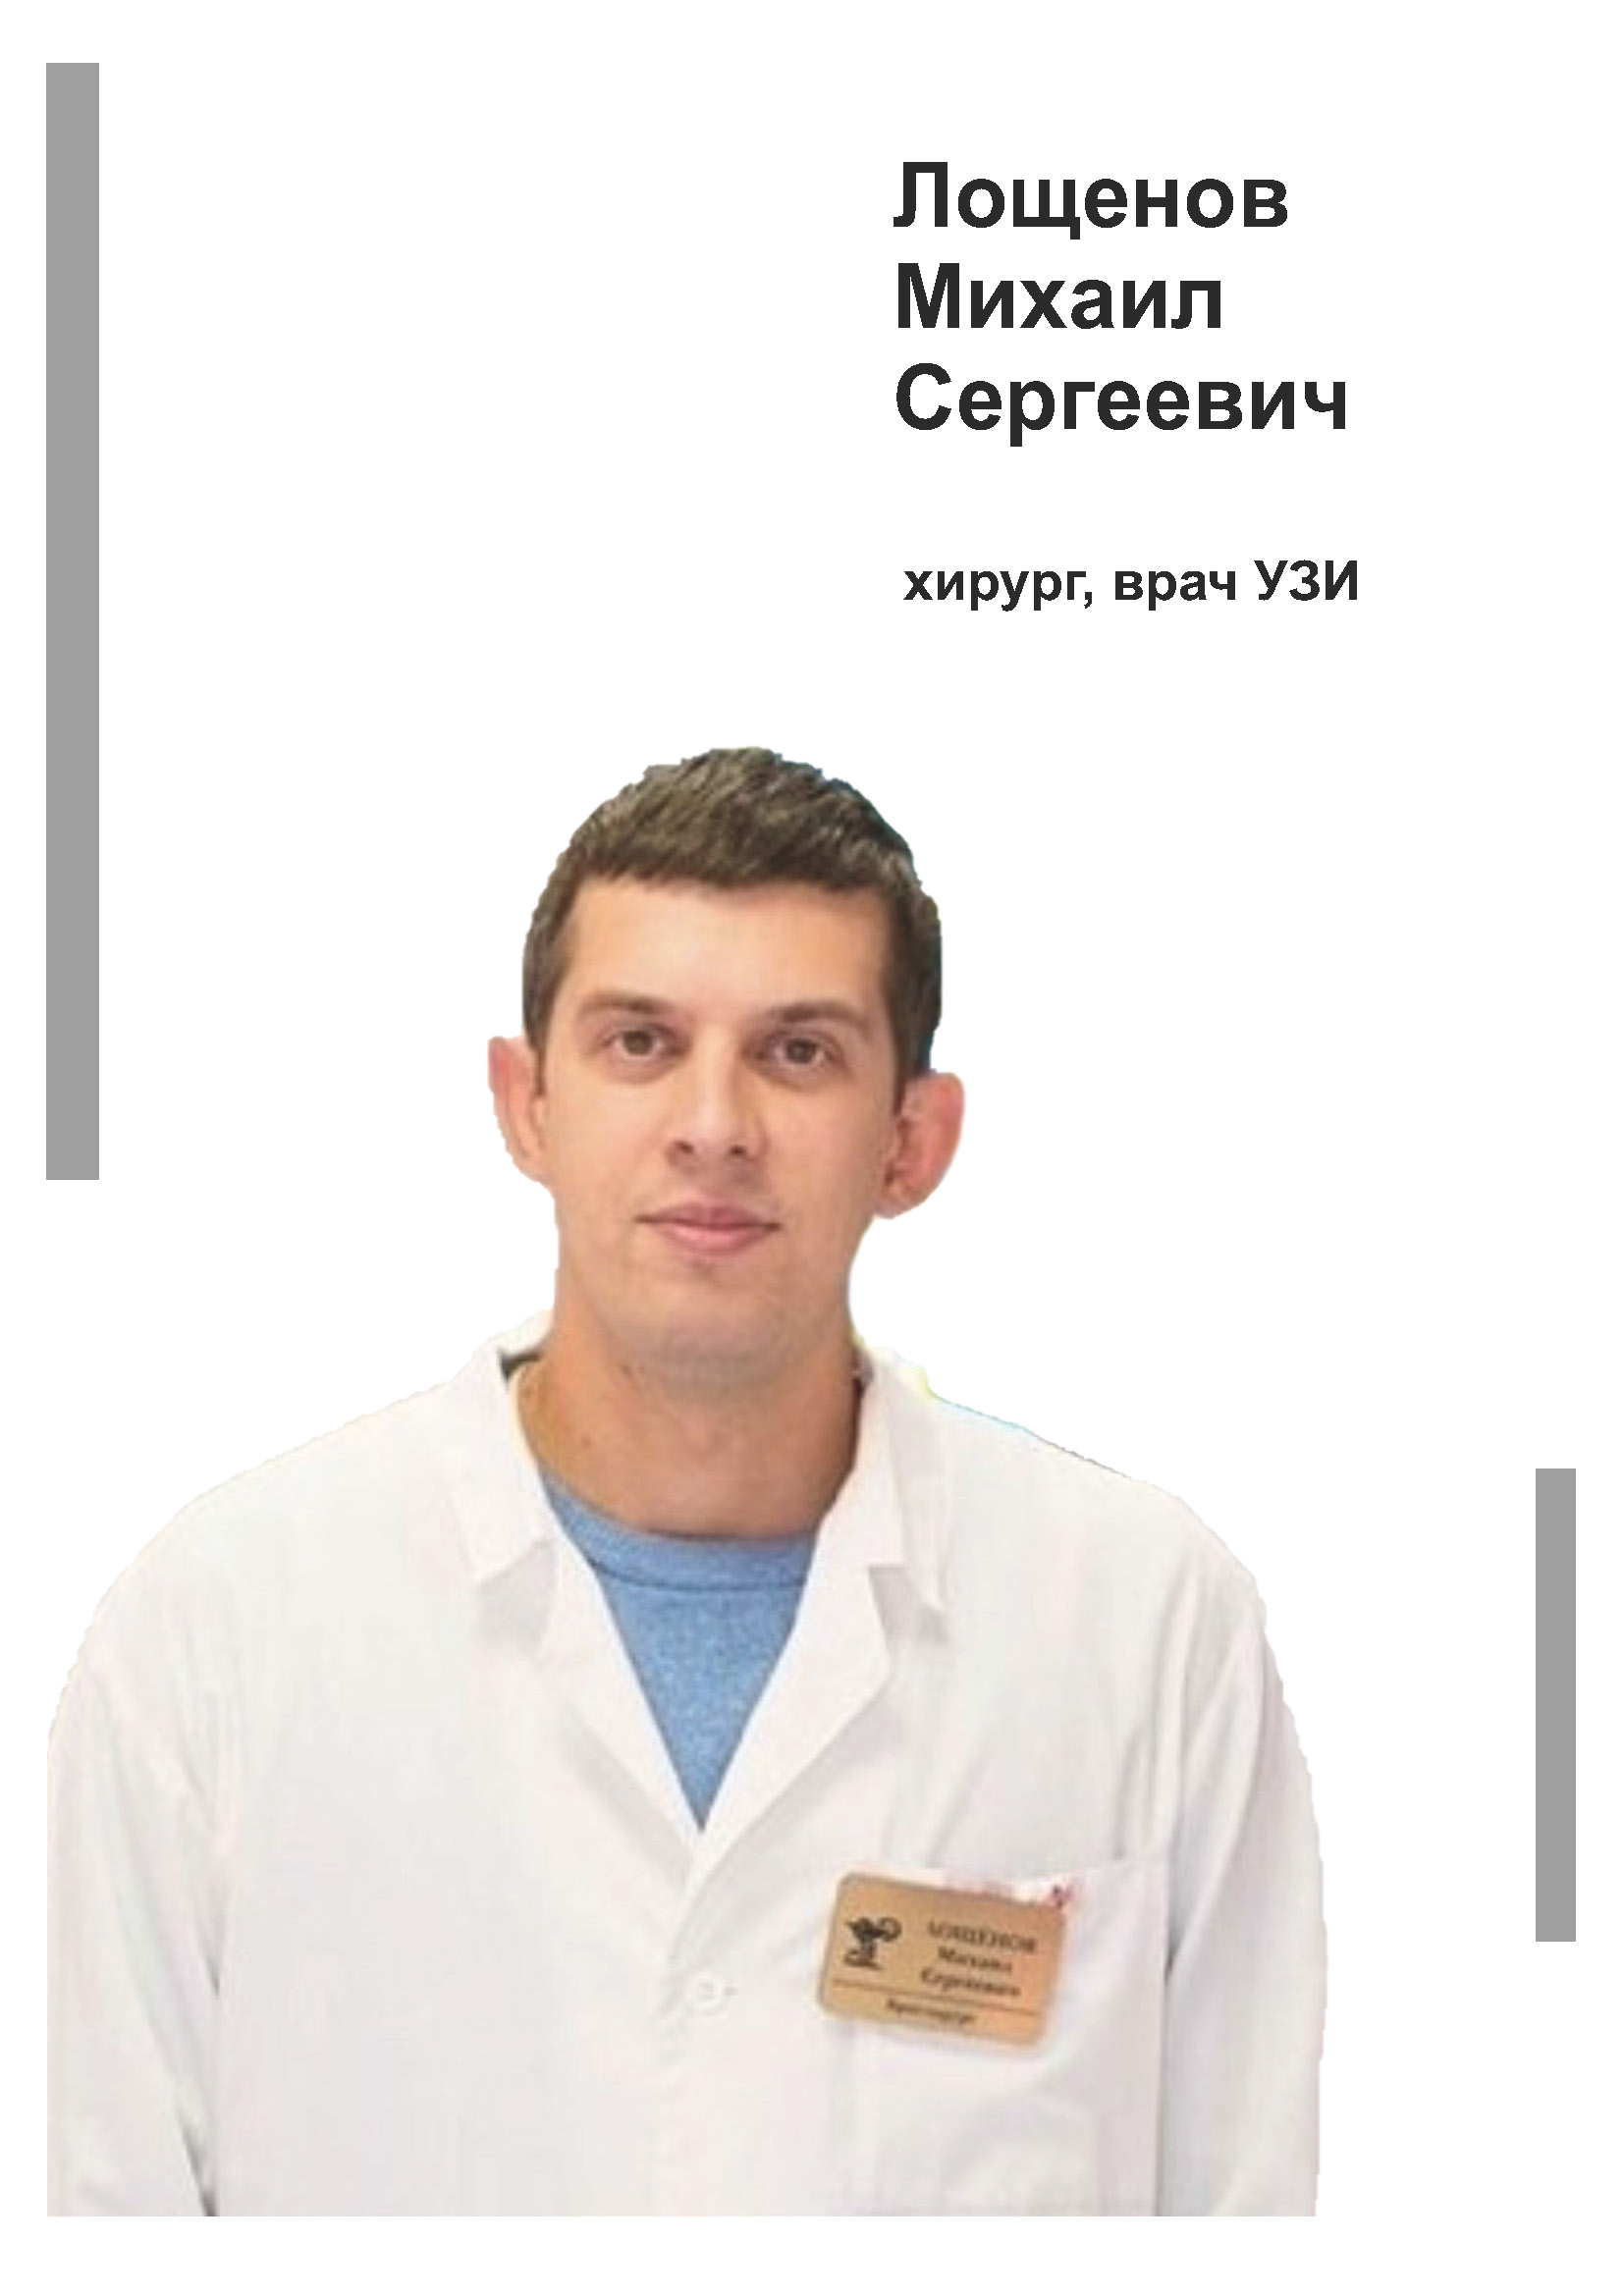 Лощенов Михаил Сергеевич - хирург, флеболог, врач УЗИ в клинике Lezaffe г. Югорск